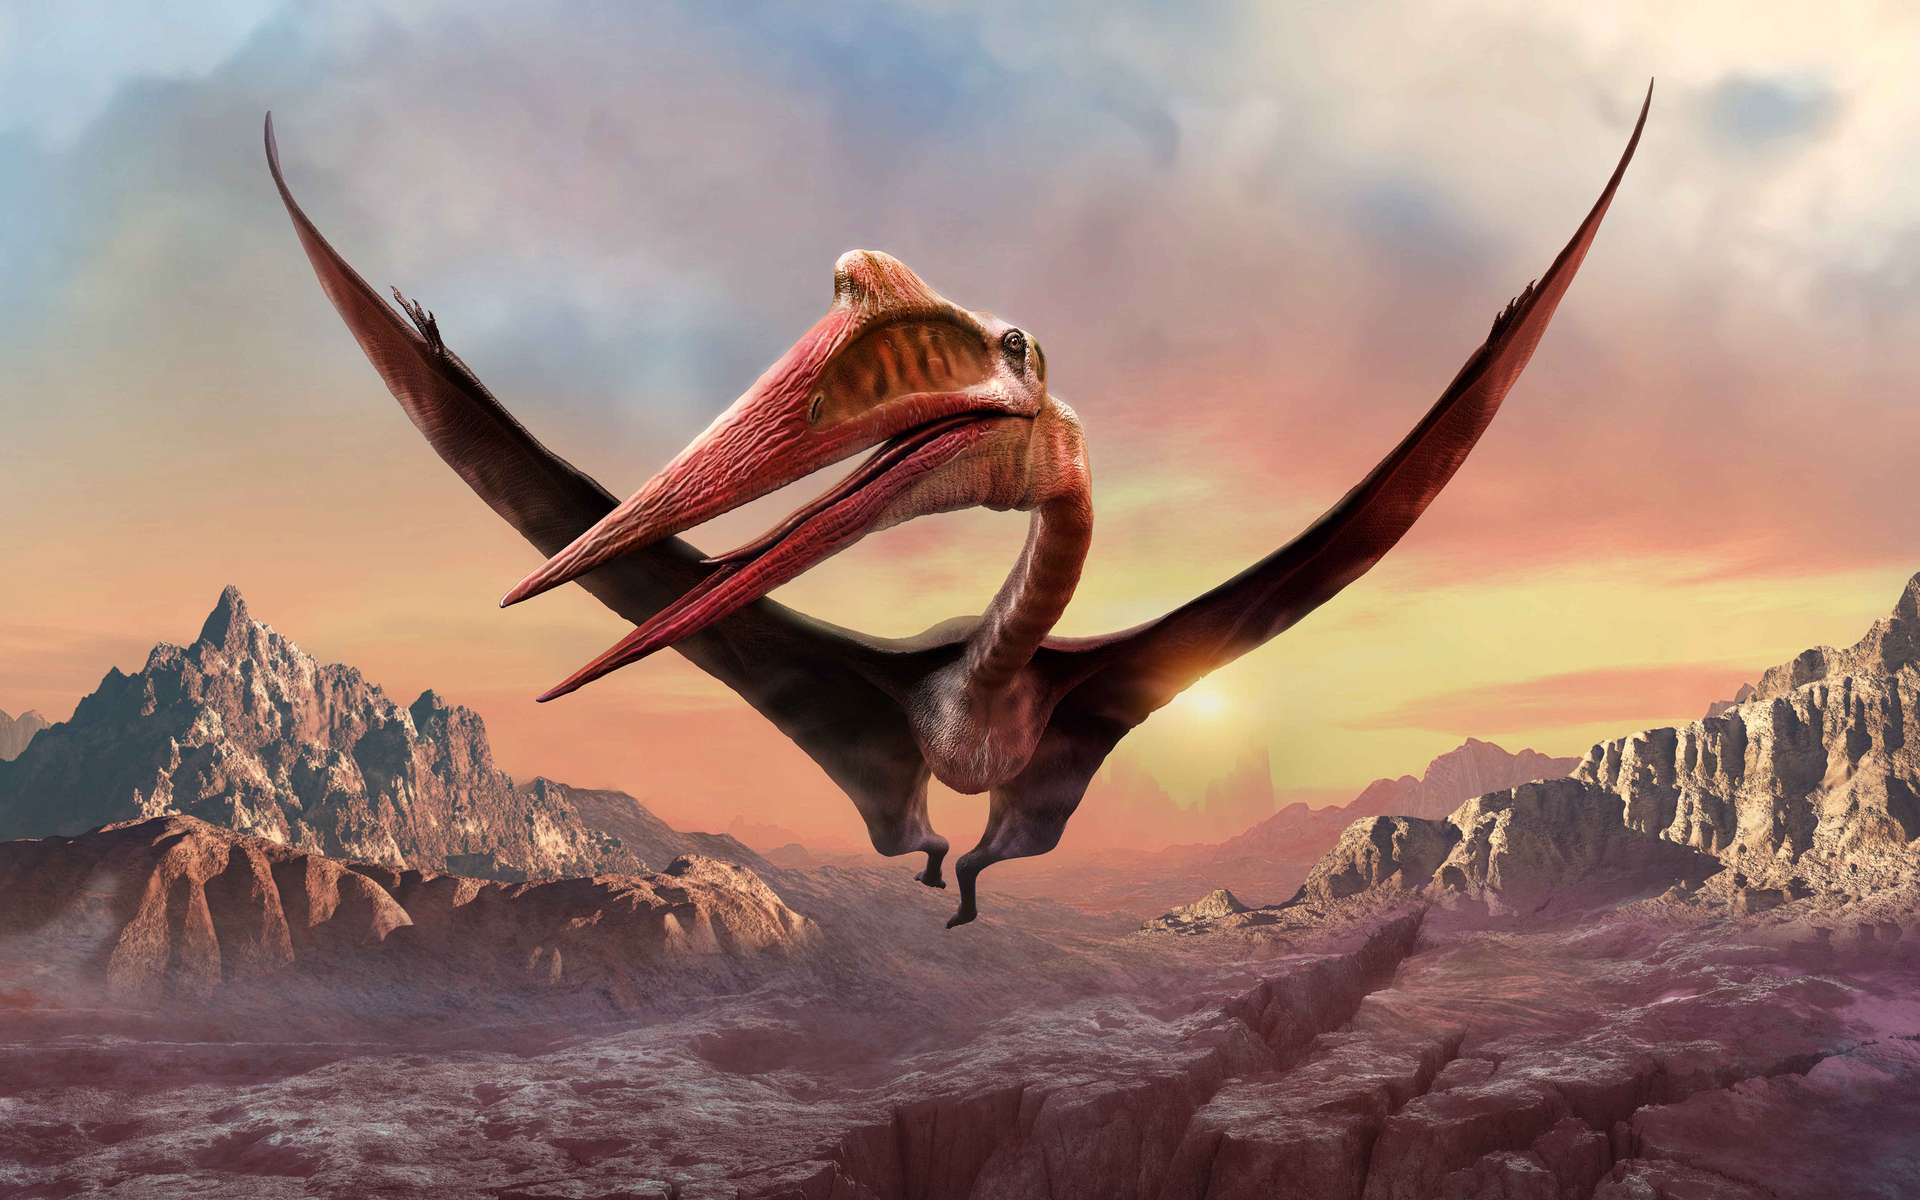 L'envergure de Quetzalcoatlus pouvait atteindre les 10 mètres. © warpaintcobra, Adobe Stock